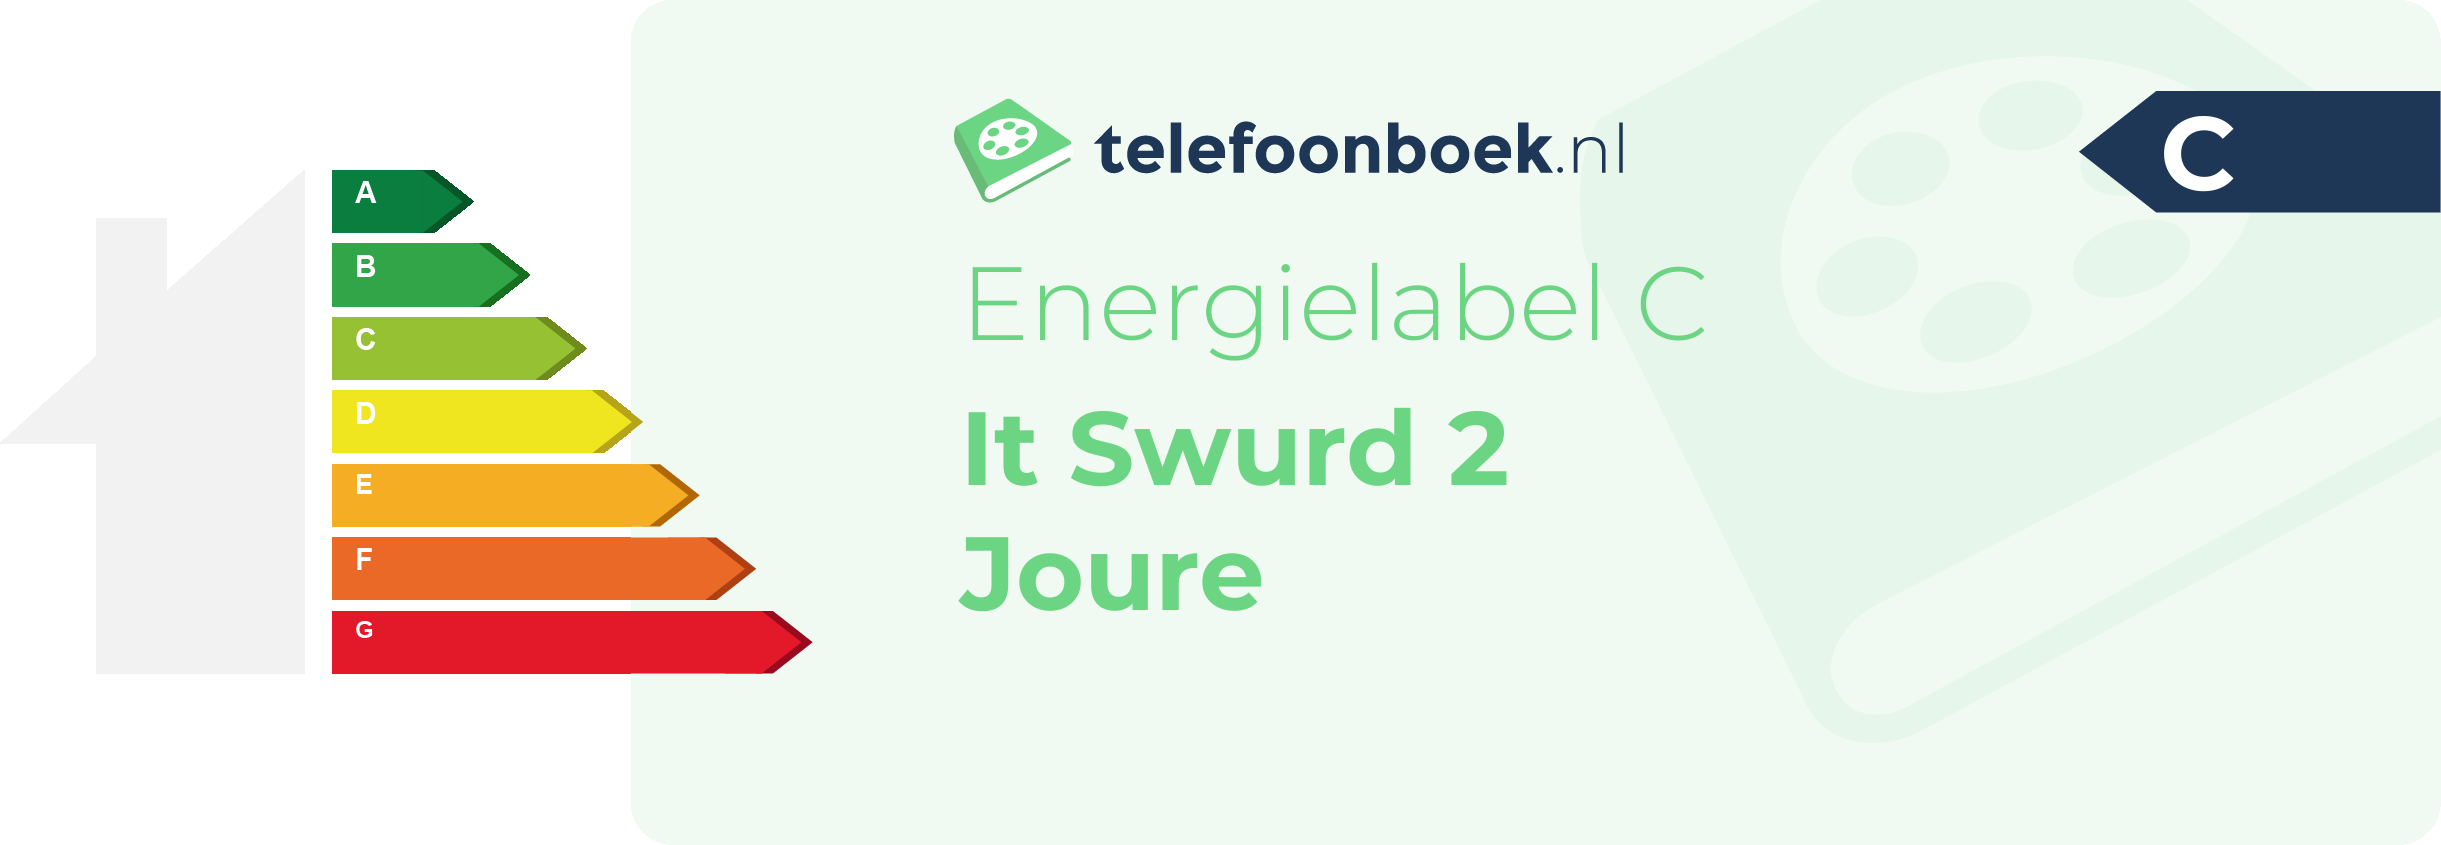 Energielabel It Swurd 2 Joure